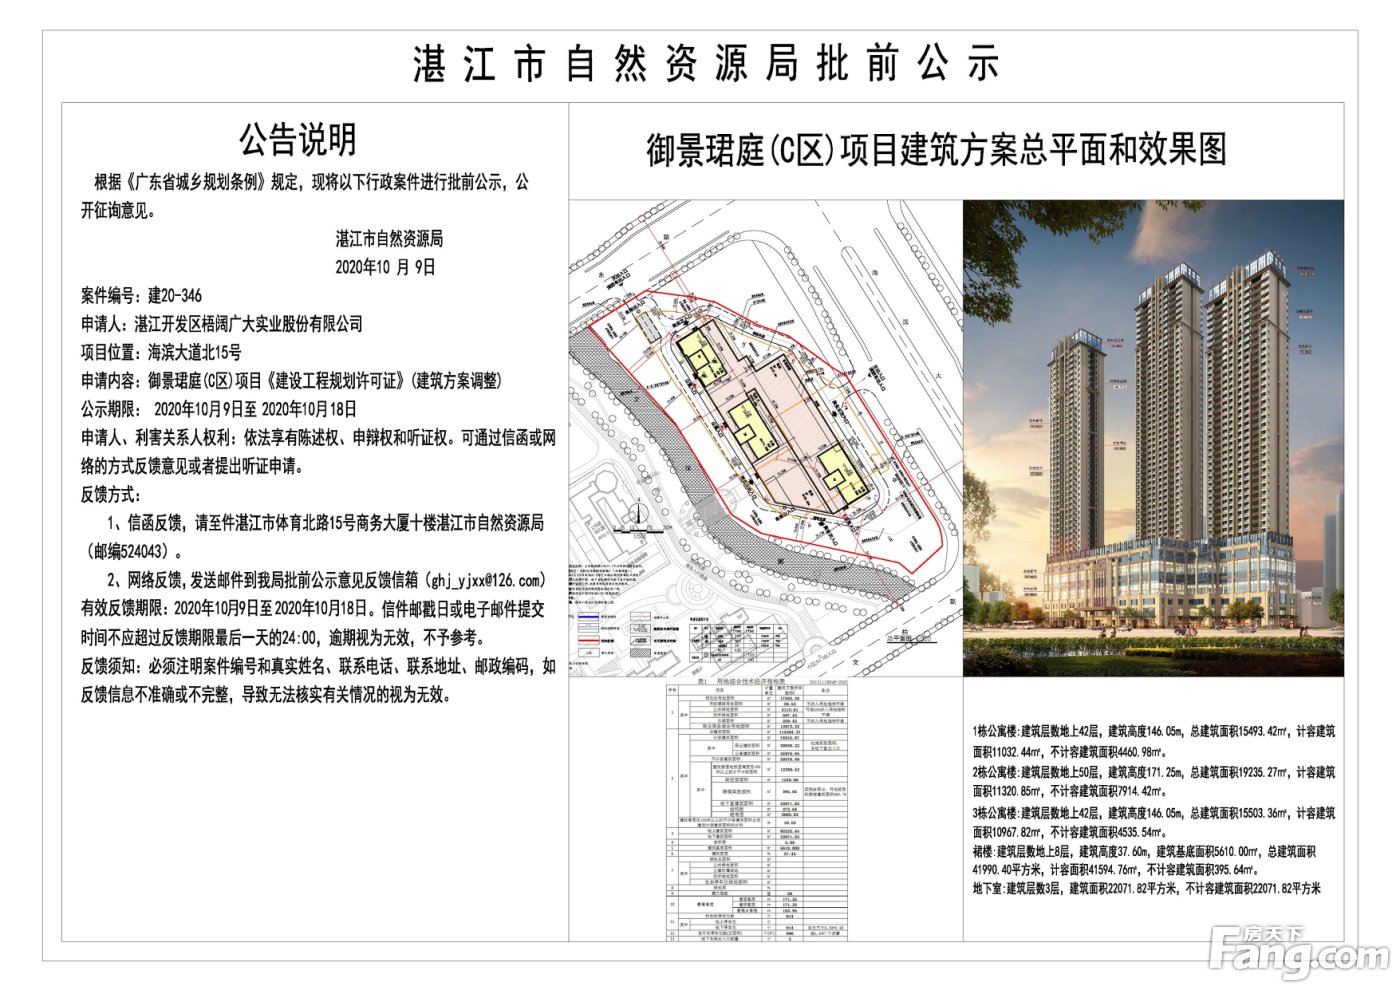 御景珺庭C区《建设工程规划许可证》批前公示 拟建3栋42-50层公寓